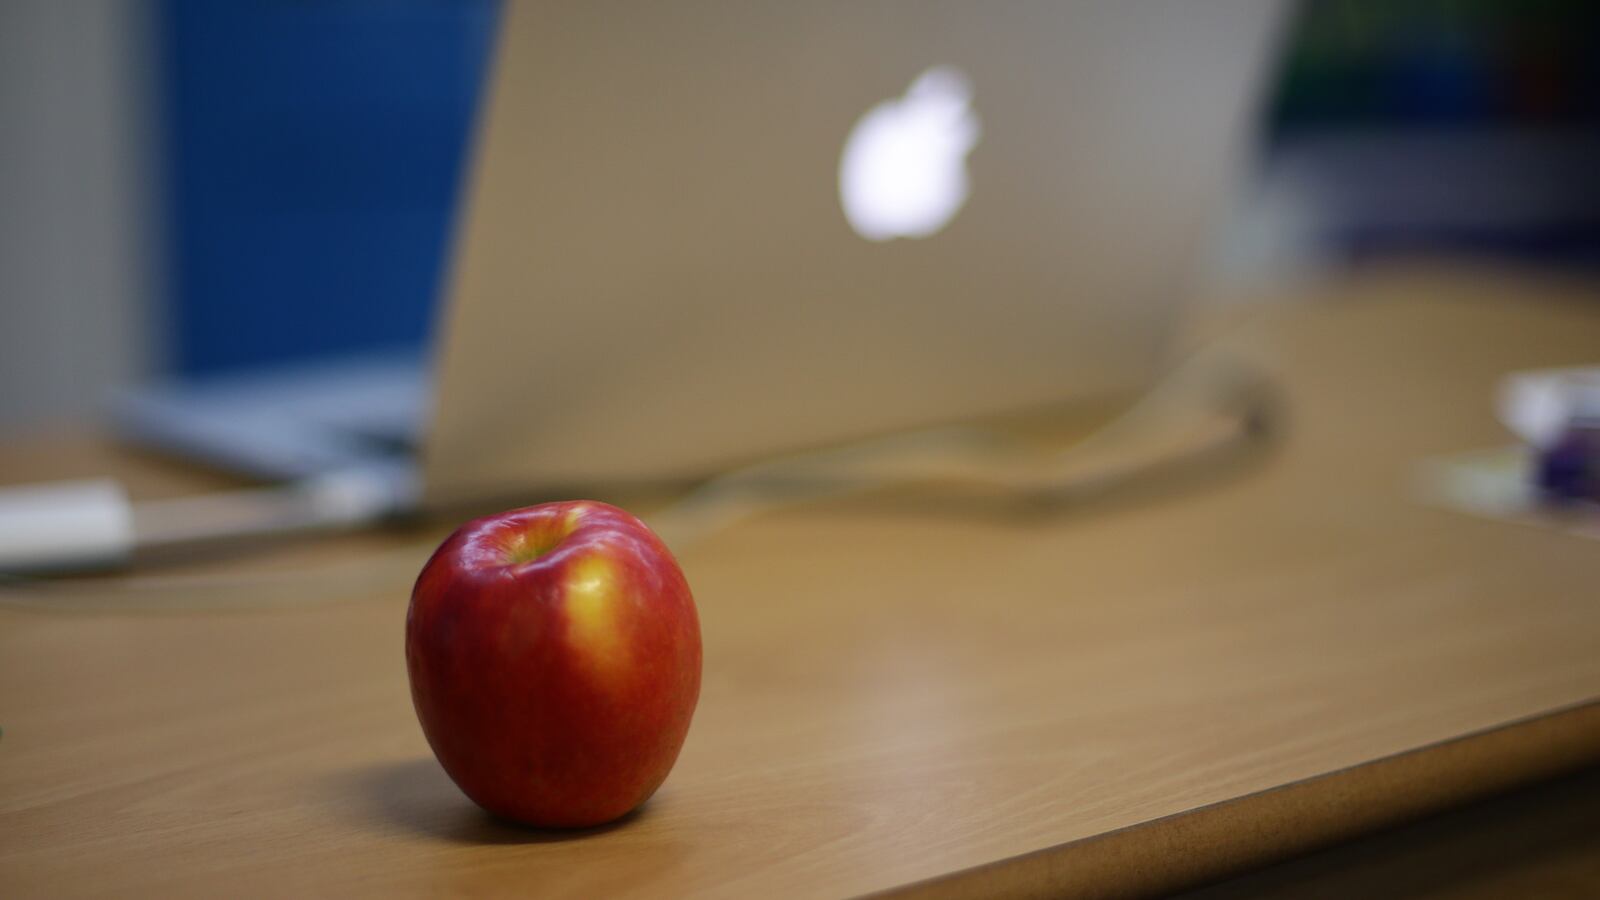 An apple next to an Apple laptop on a teacher's desk